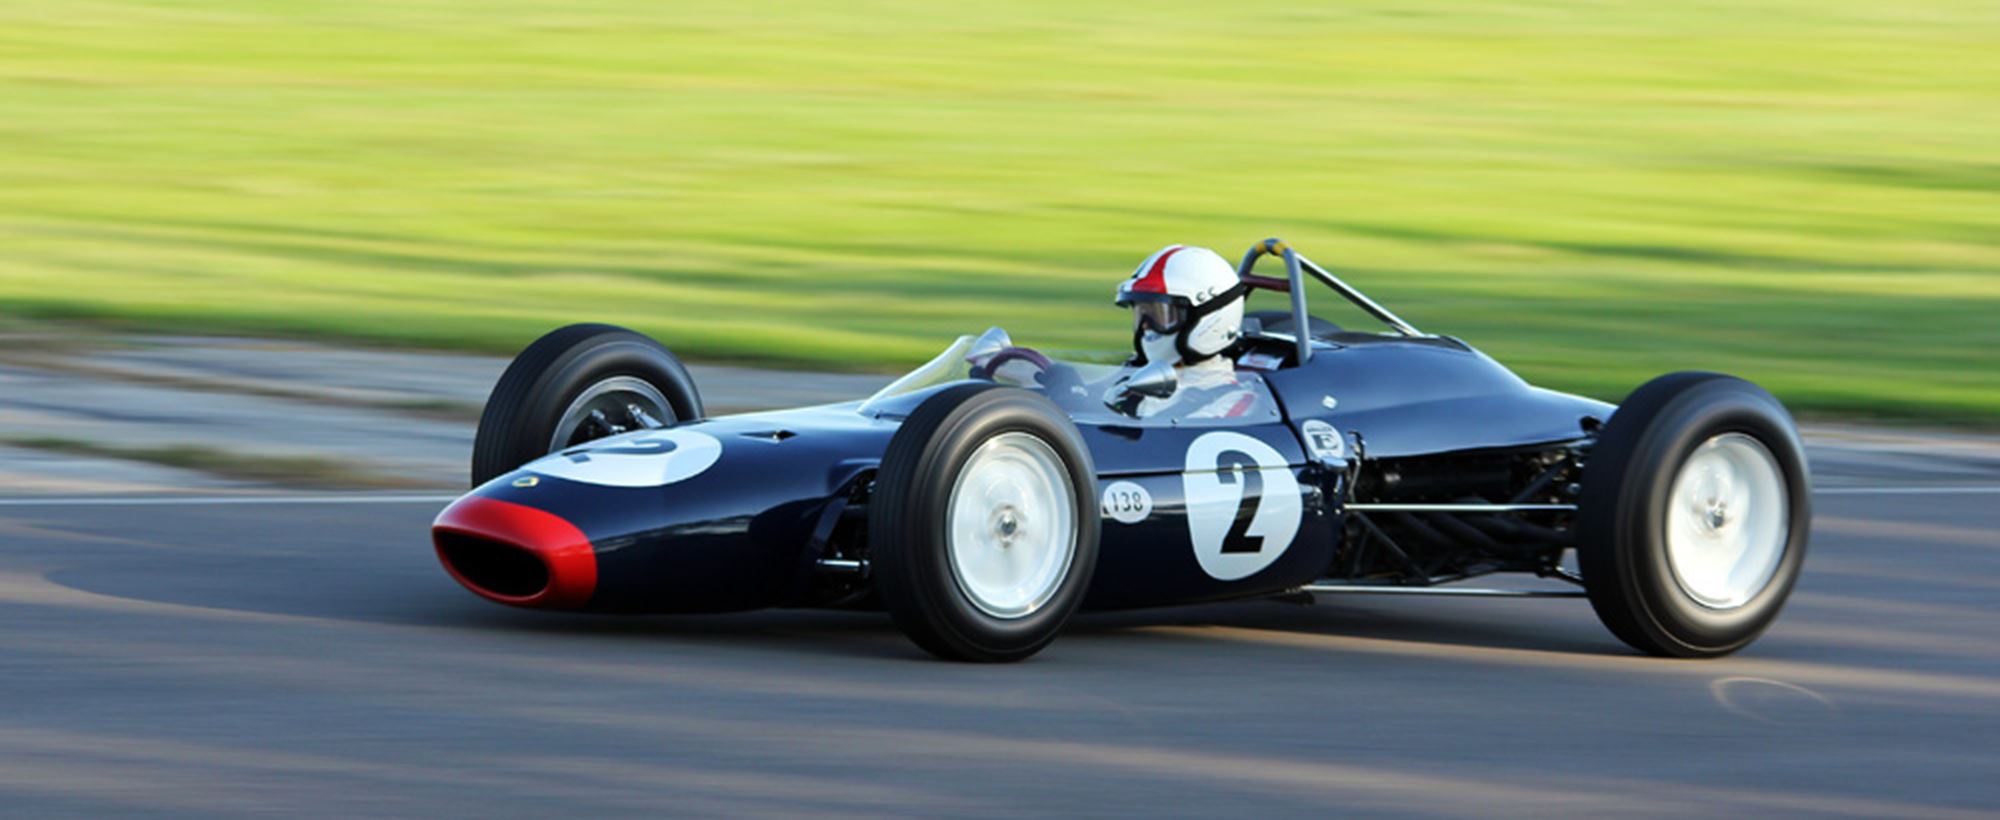 Lotus-24-BRM_car.jpg